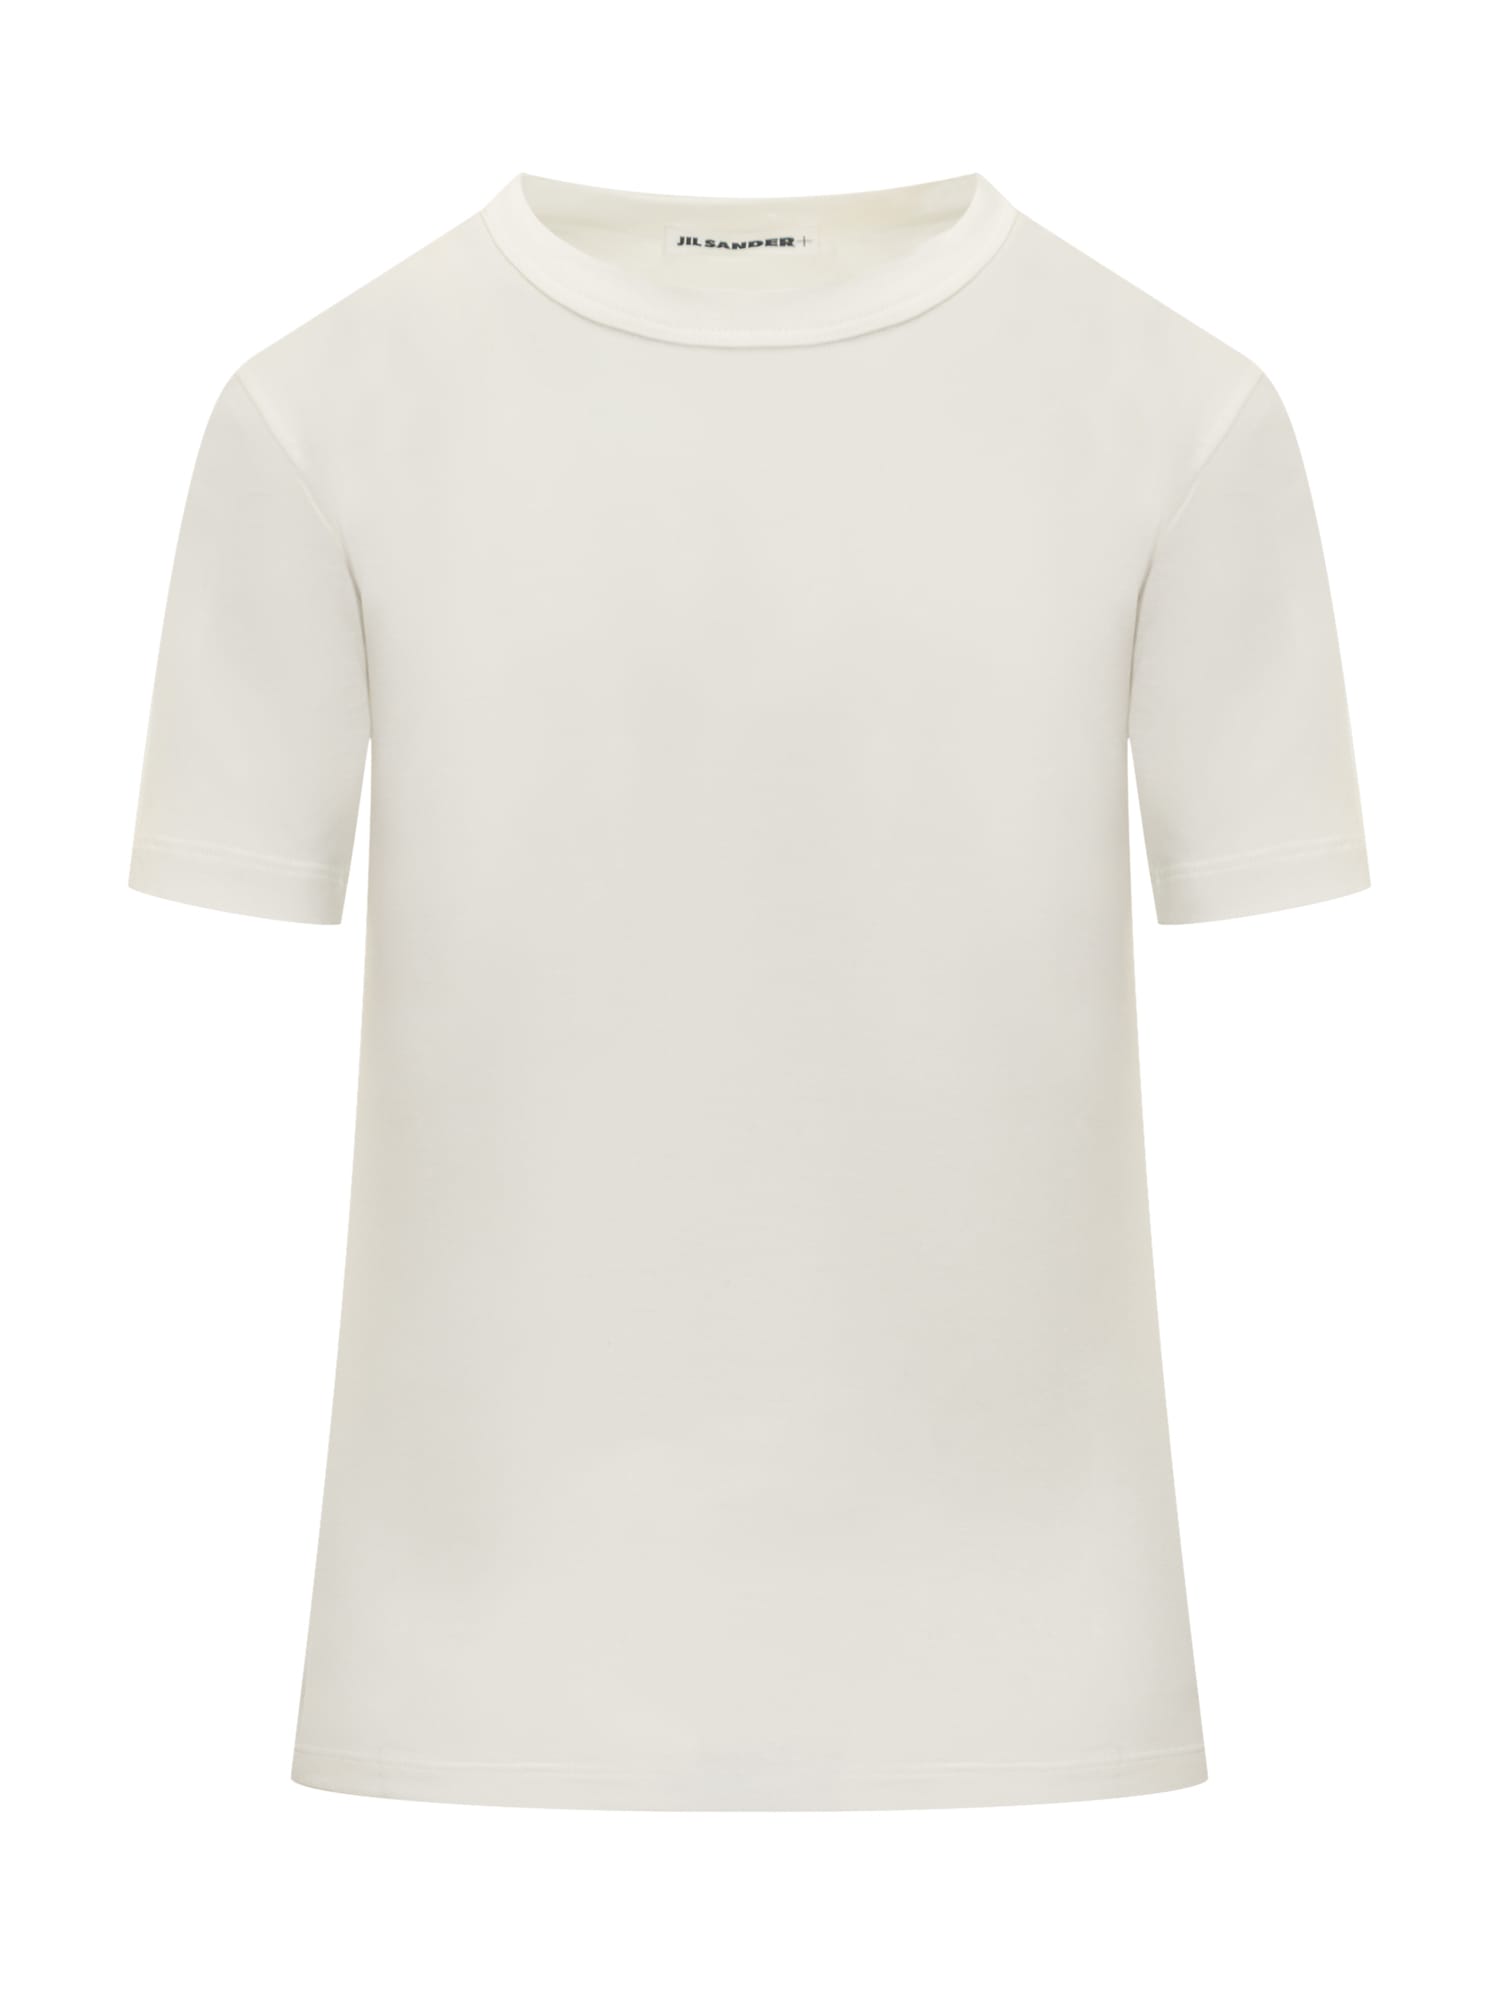 Jil Sander T-shirt In White